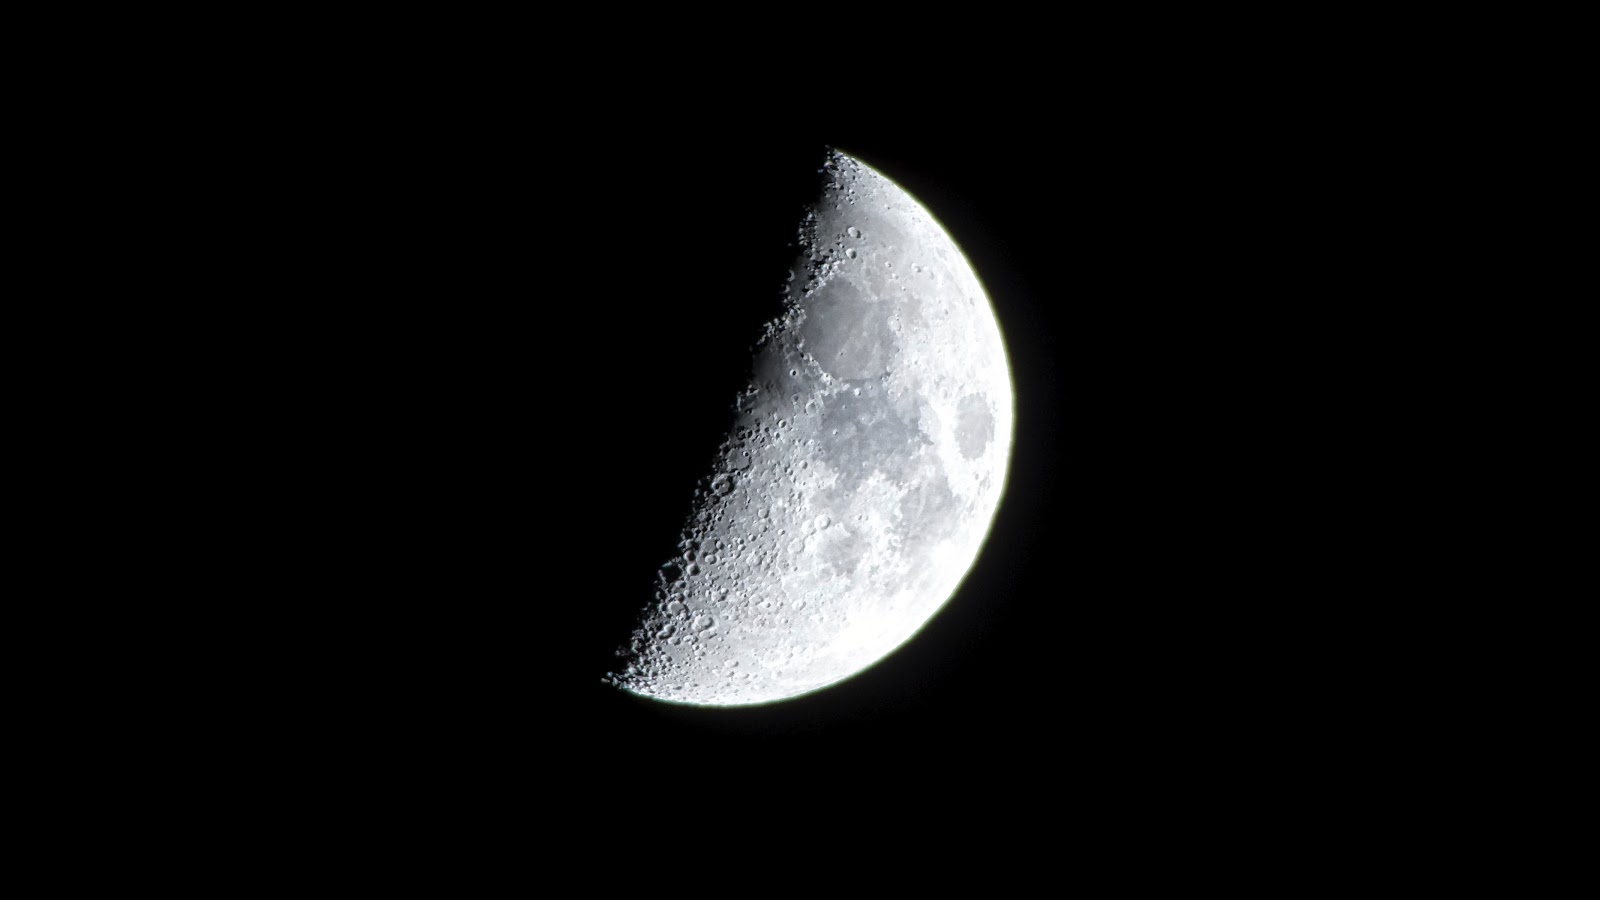 Moon 5.jpg